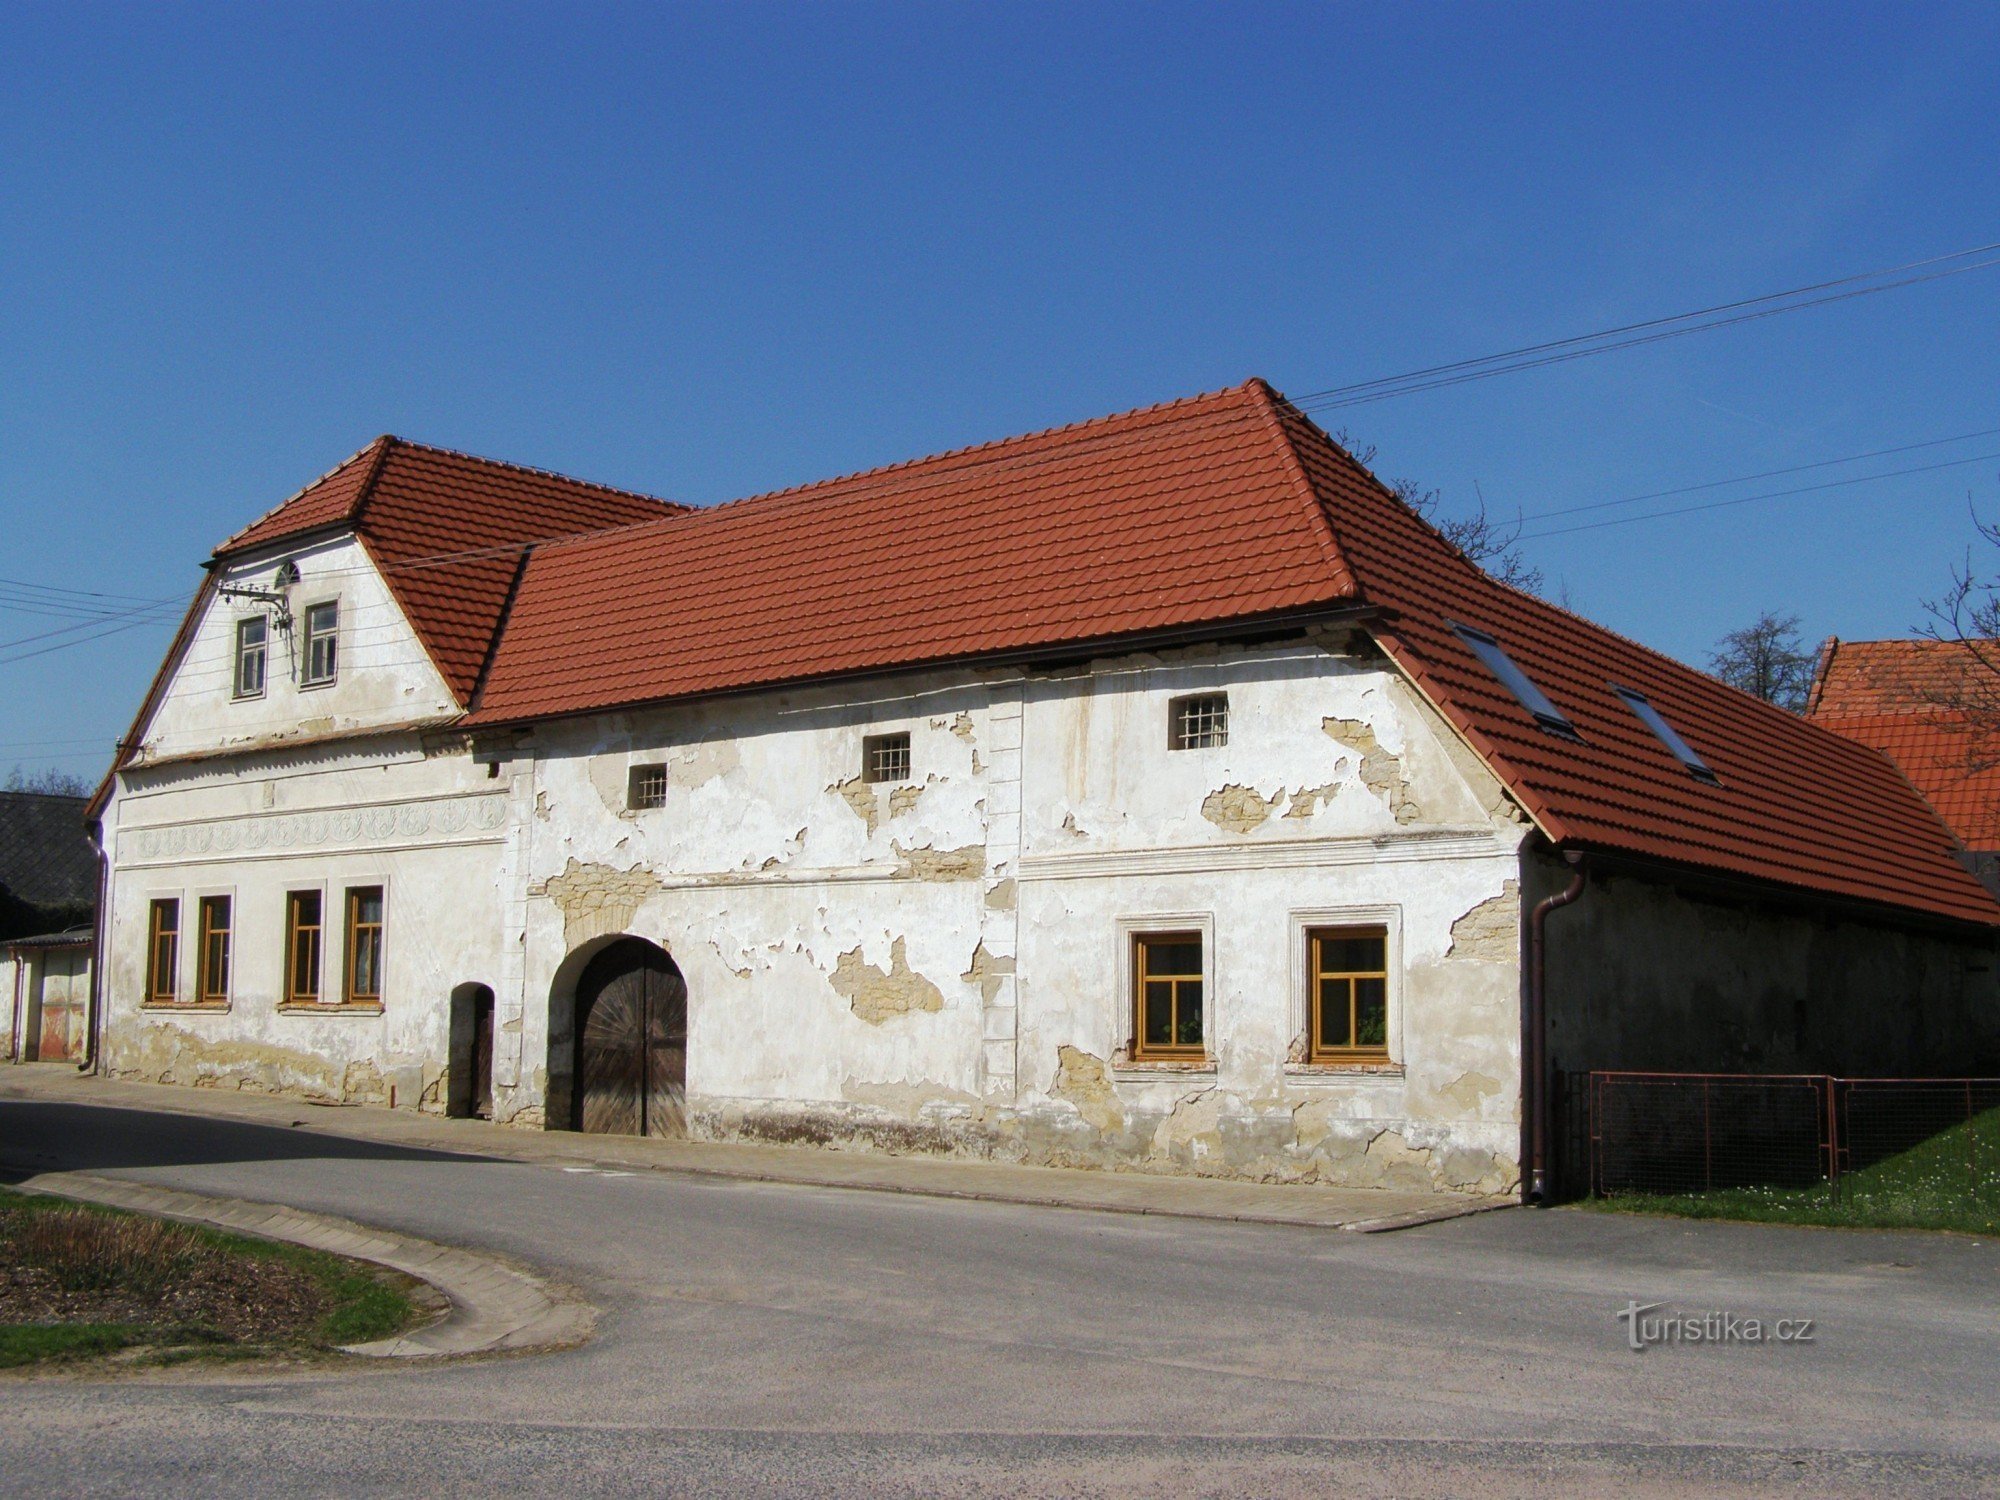 Újezdec - an old farm